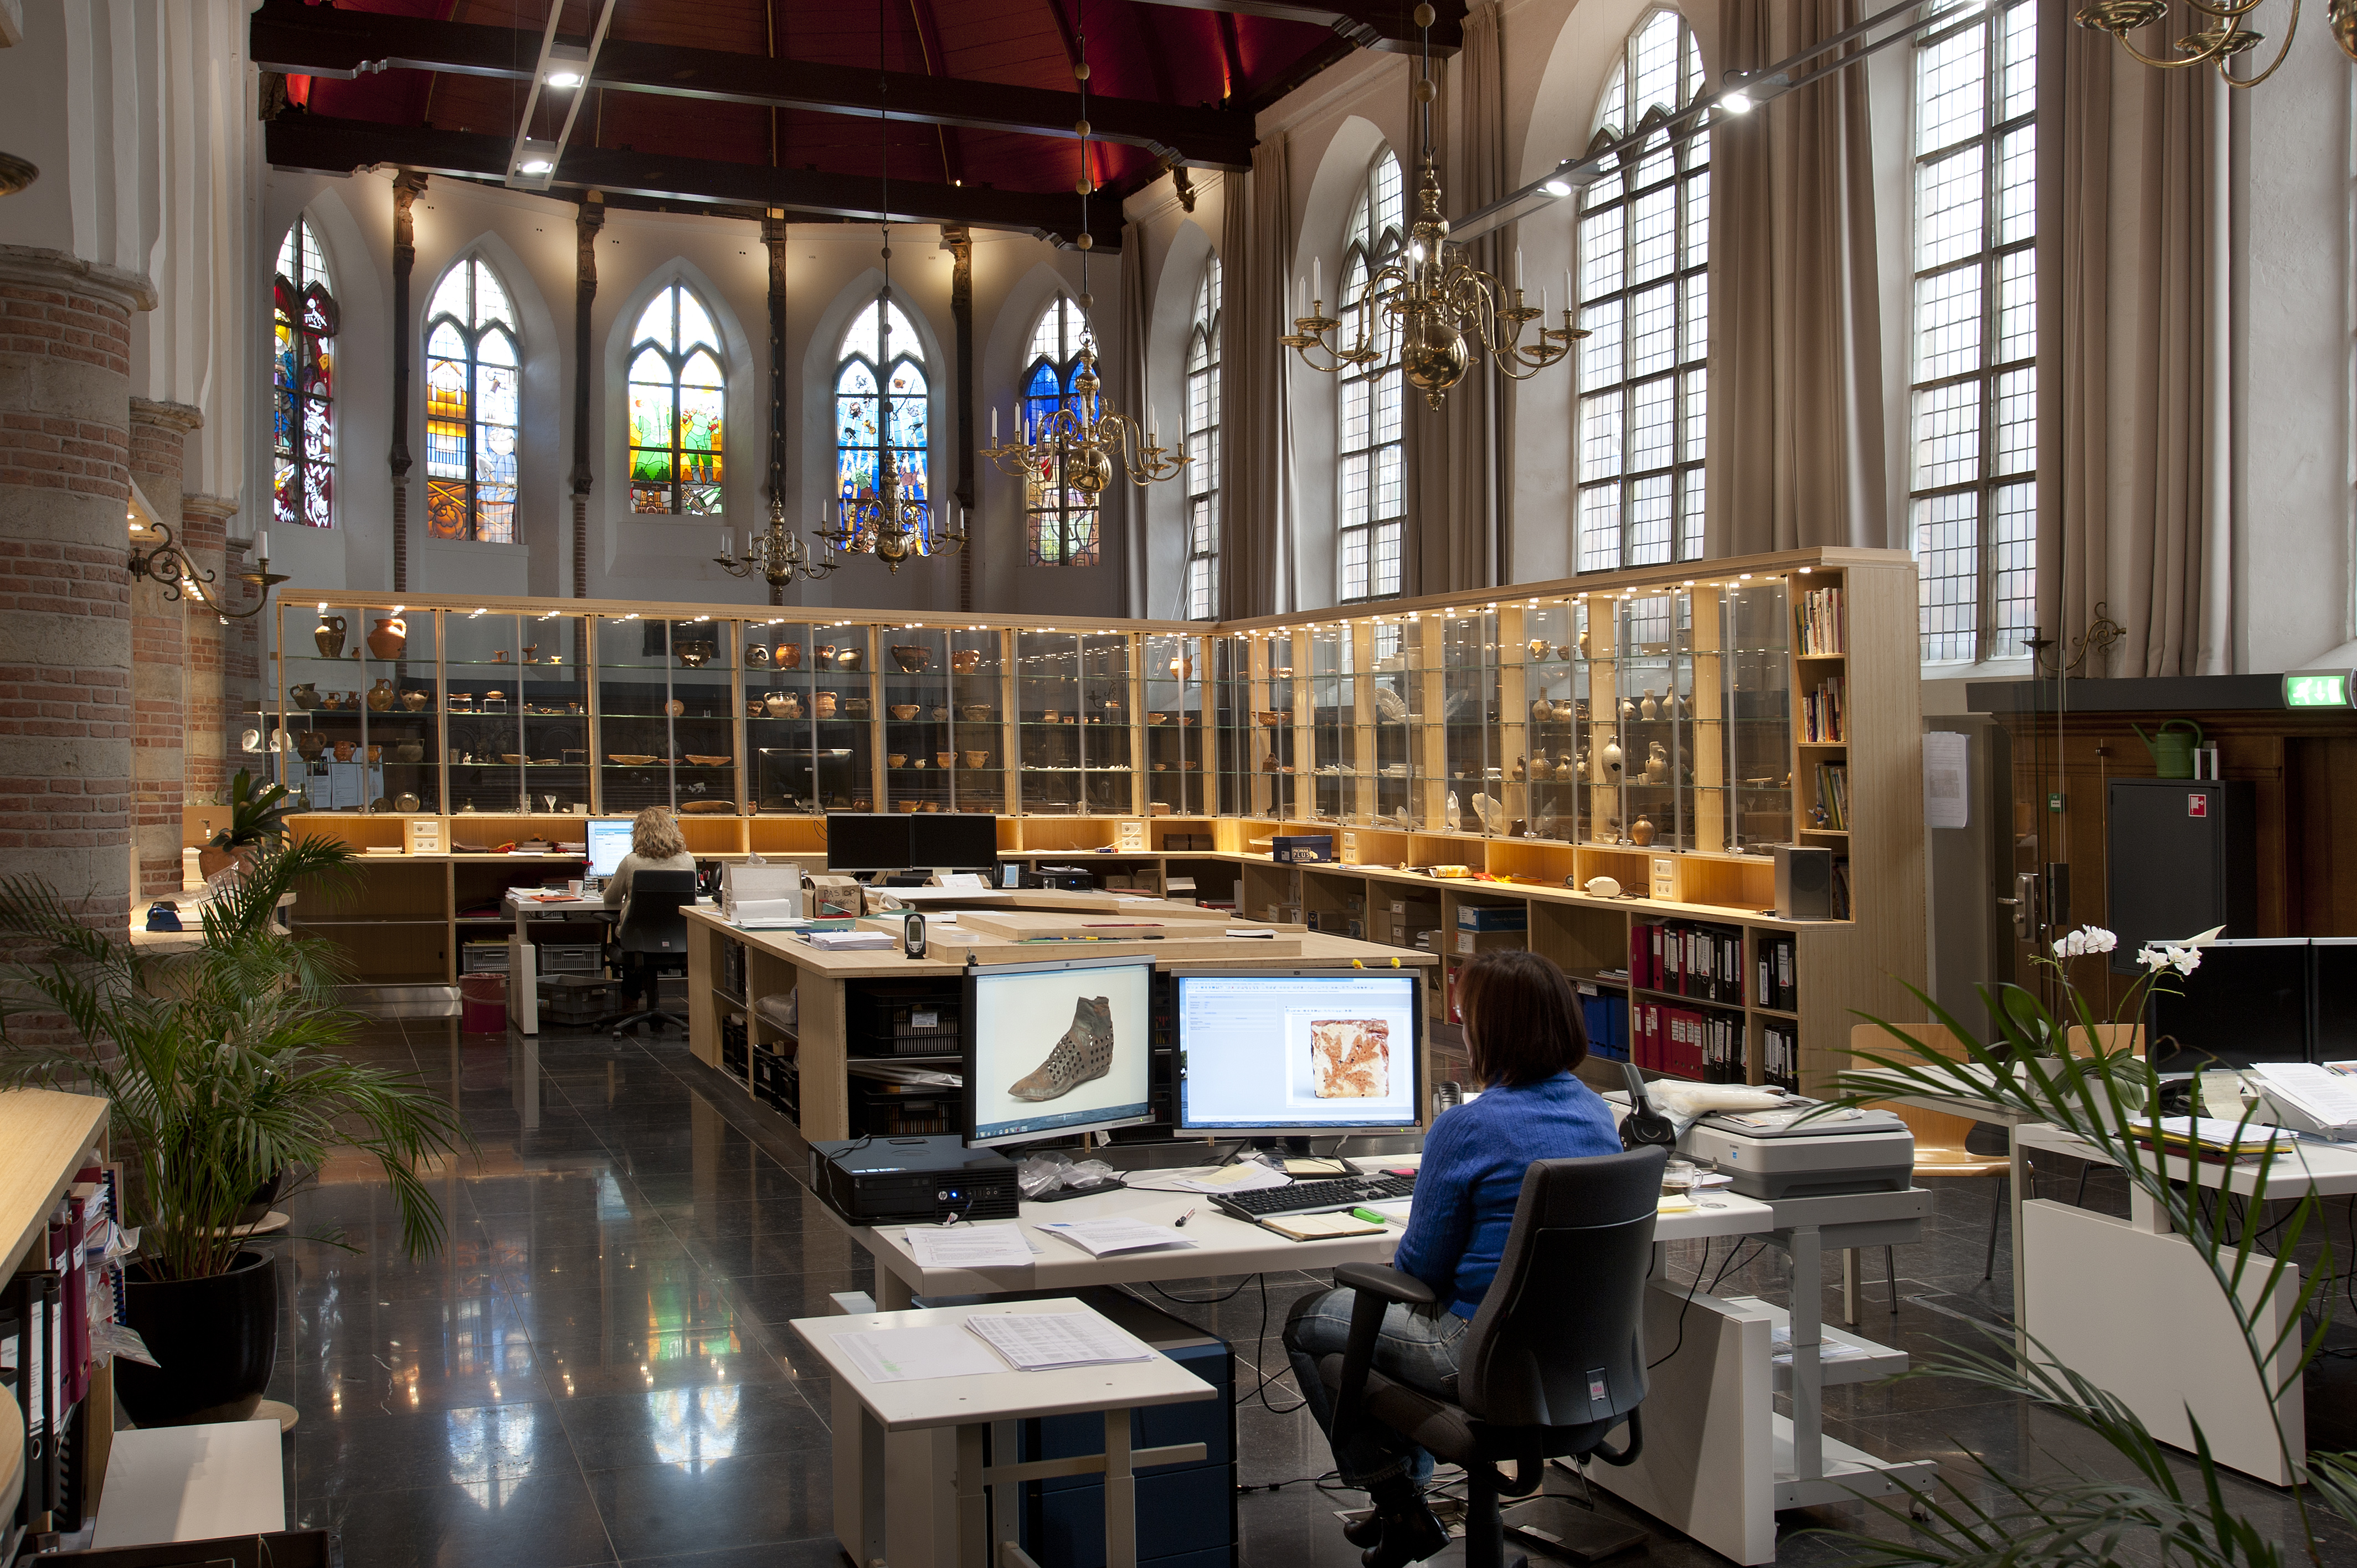 Op de achtergrond de glas-in-loodramen ontworpen door striptekenaars. De ramen laten het nieuwe gebruik van de kerk zien. De binnenruimte wordt namelijk gebruikt als werkruimte en tentoonstellingsruimte voor de Dienst Archeologie van Haarlem. 